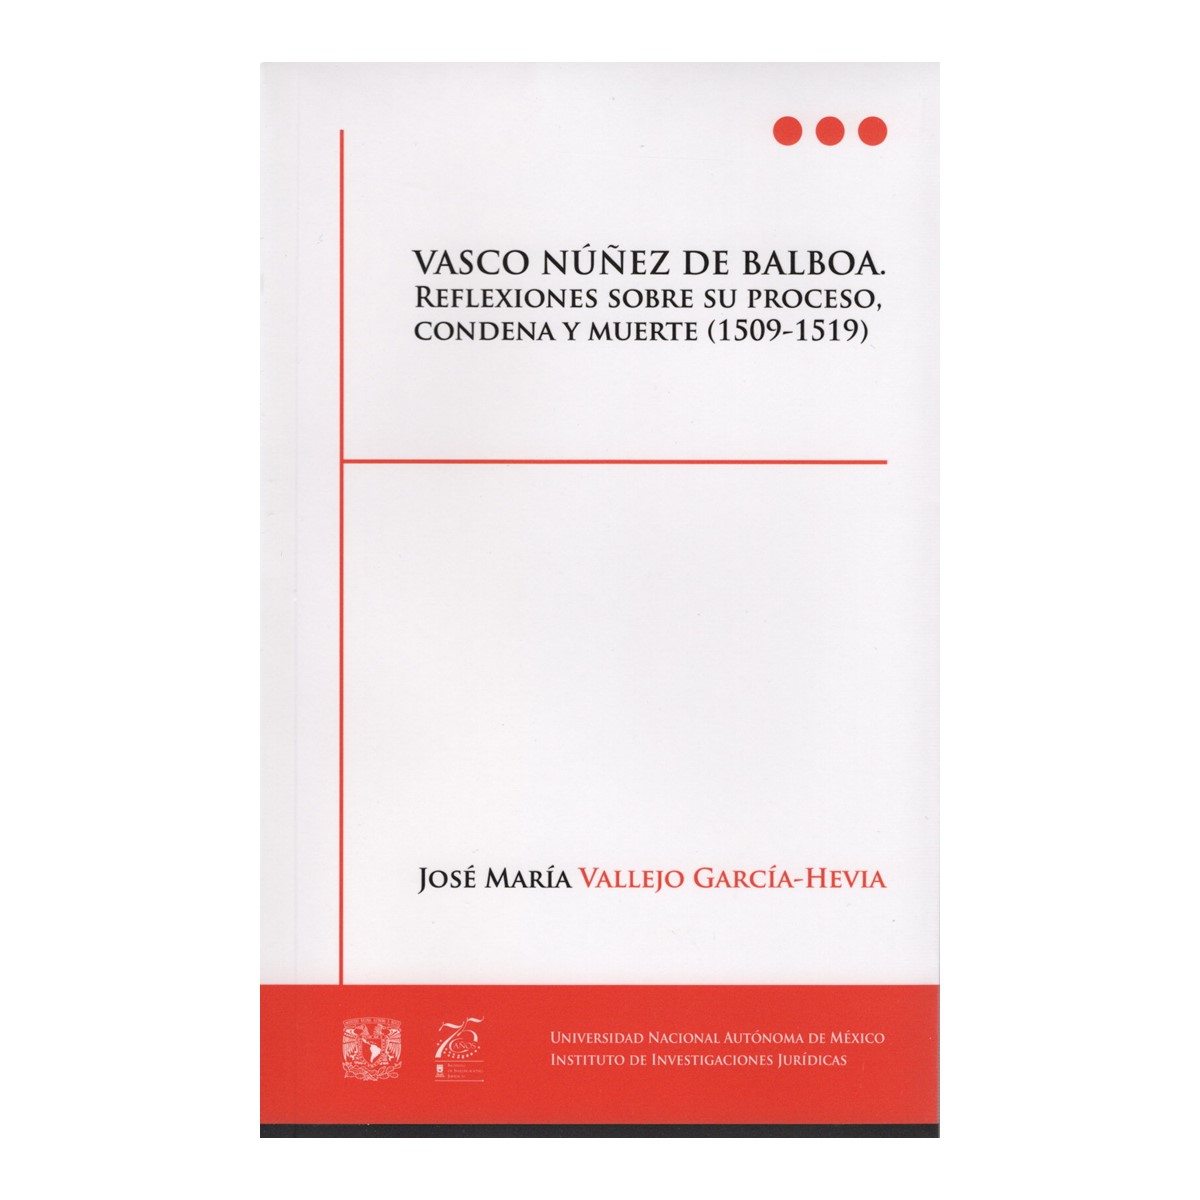 VASCO NÚÑEZ DE BALBOA. REFLEXIONES SOBRE SU PROCESO, CONDENA Y MUERTE (1509-1519)